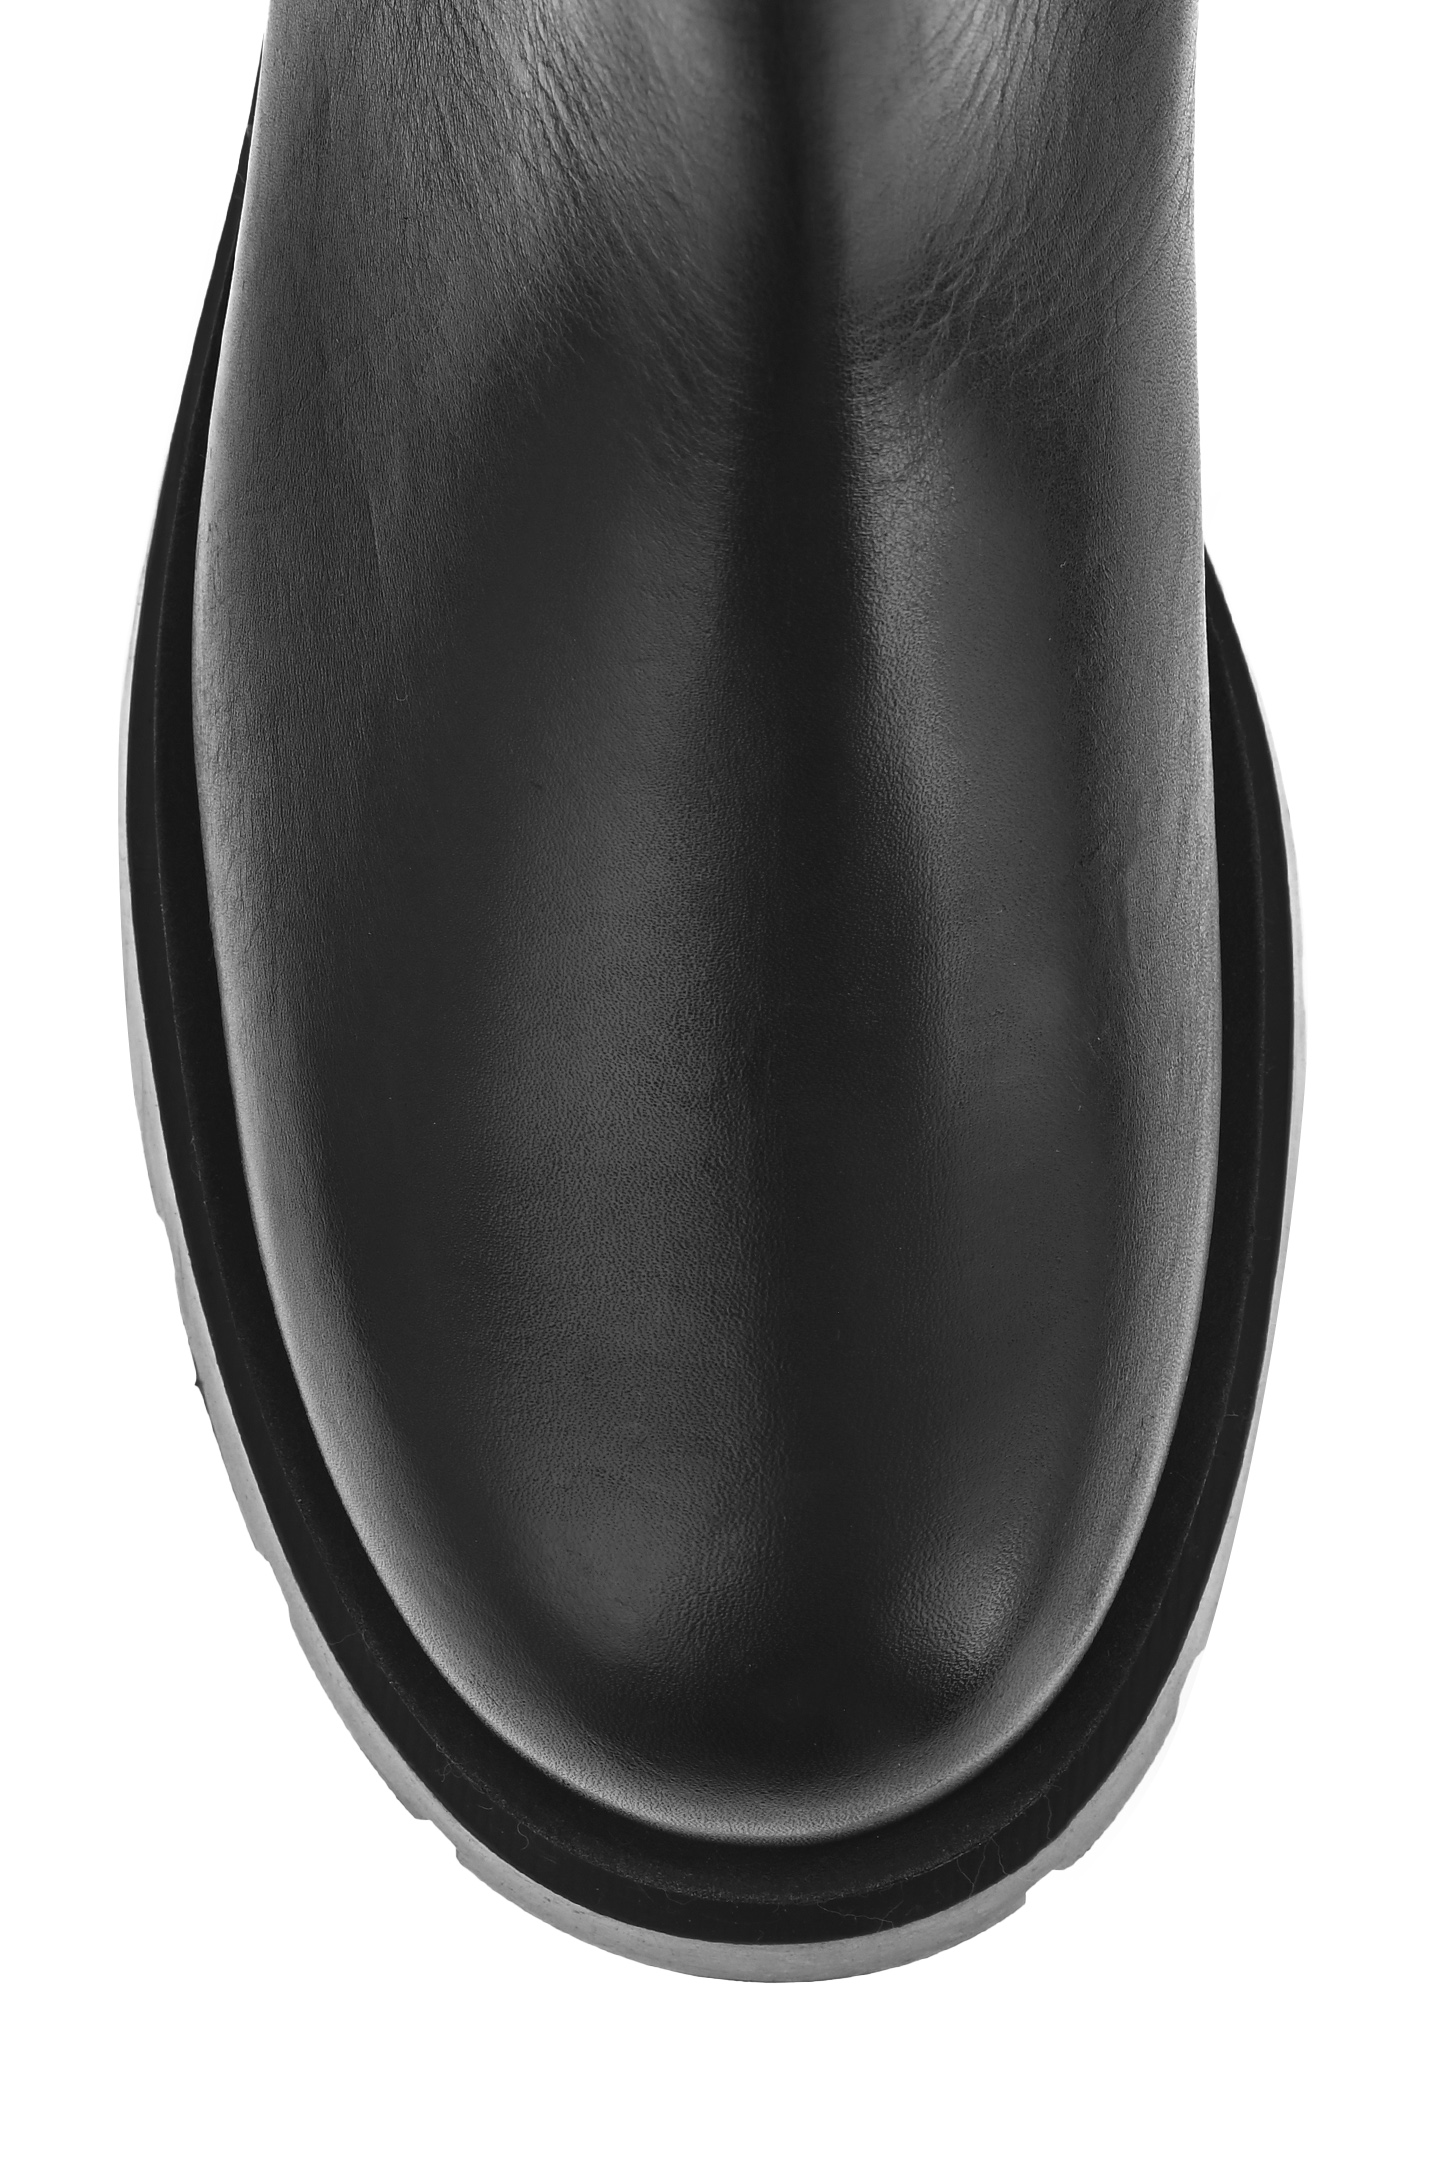 Ботинки P.A.R.O.S.H. D060096 MOKISHOE, цвет: Черный, Женский